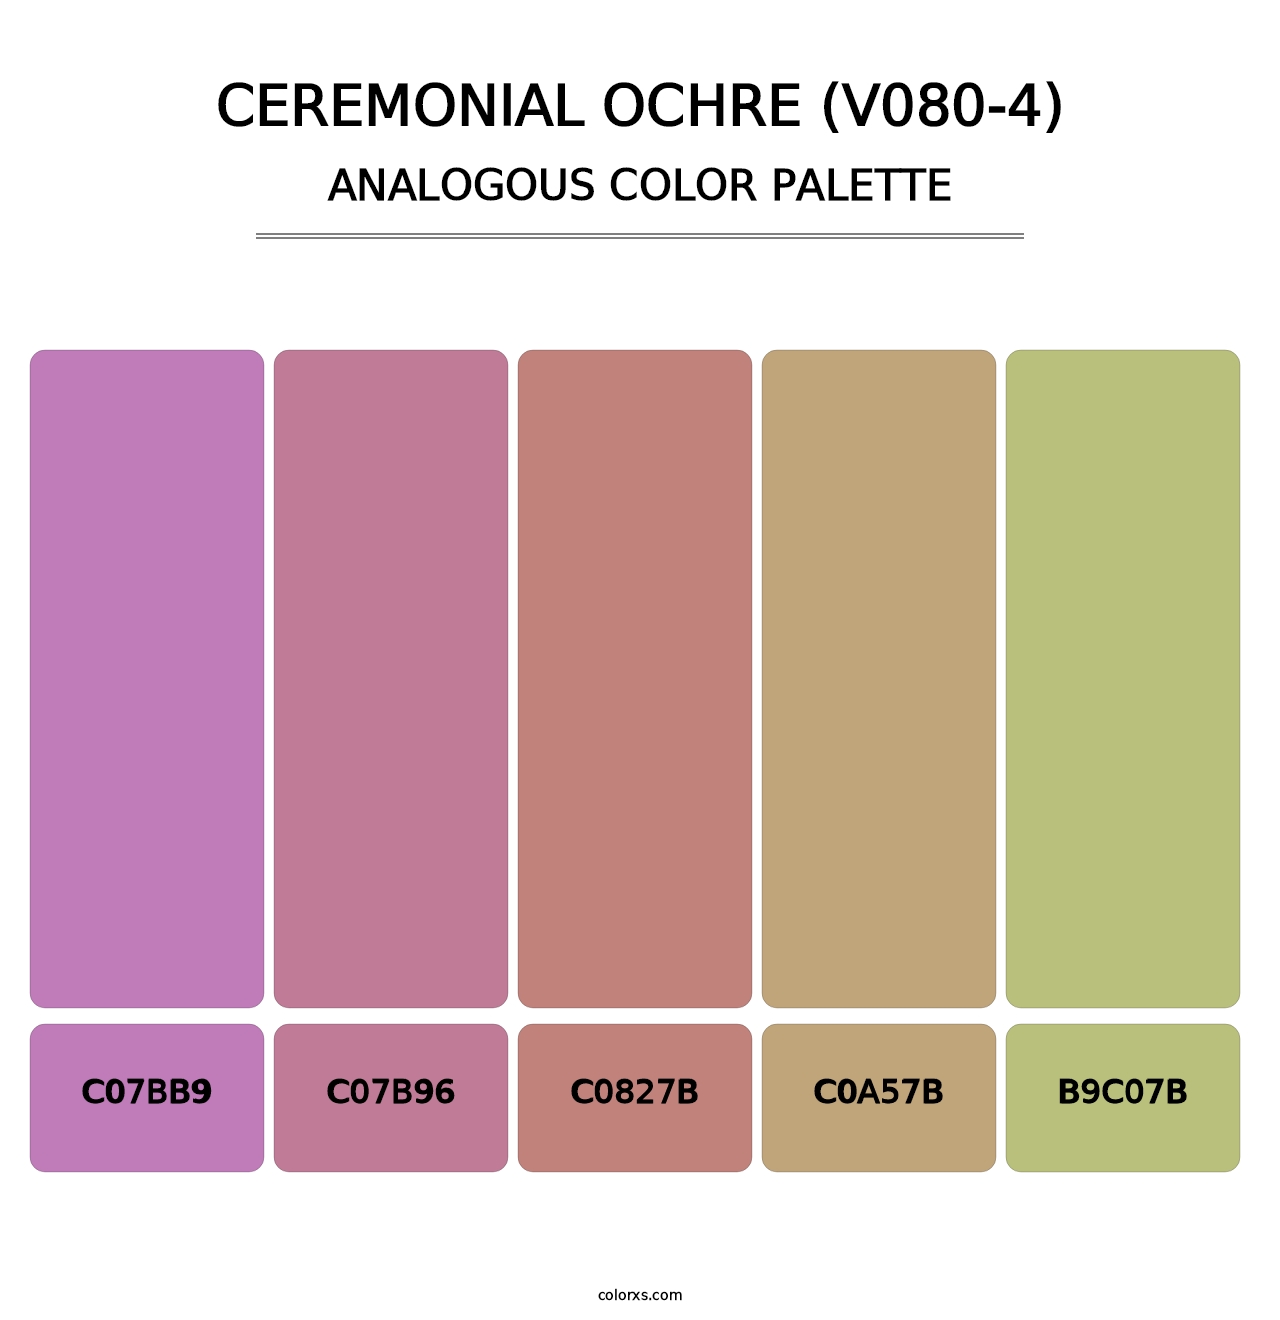 Ceremonial Ochre (V080-4) - Analogous Color Palette